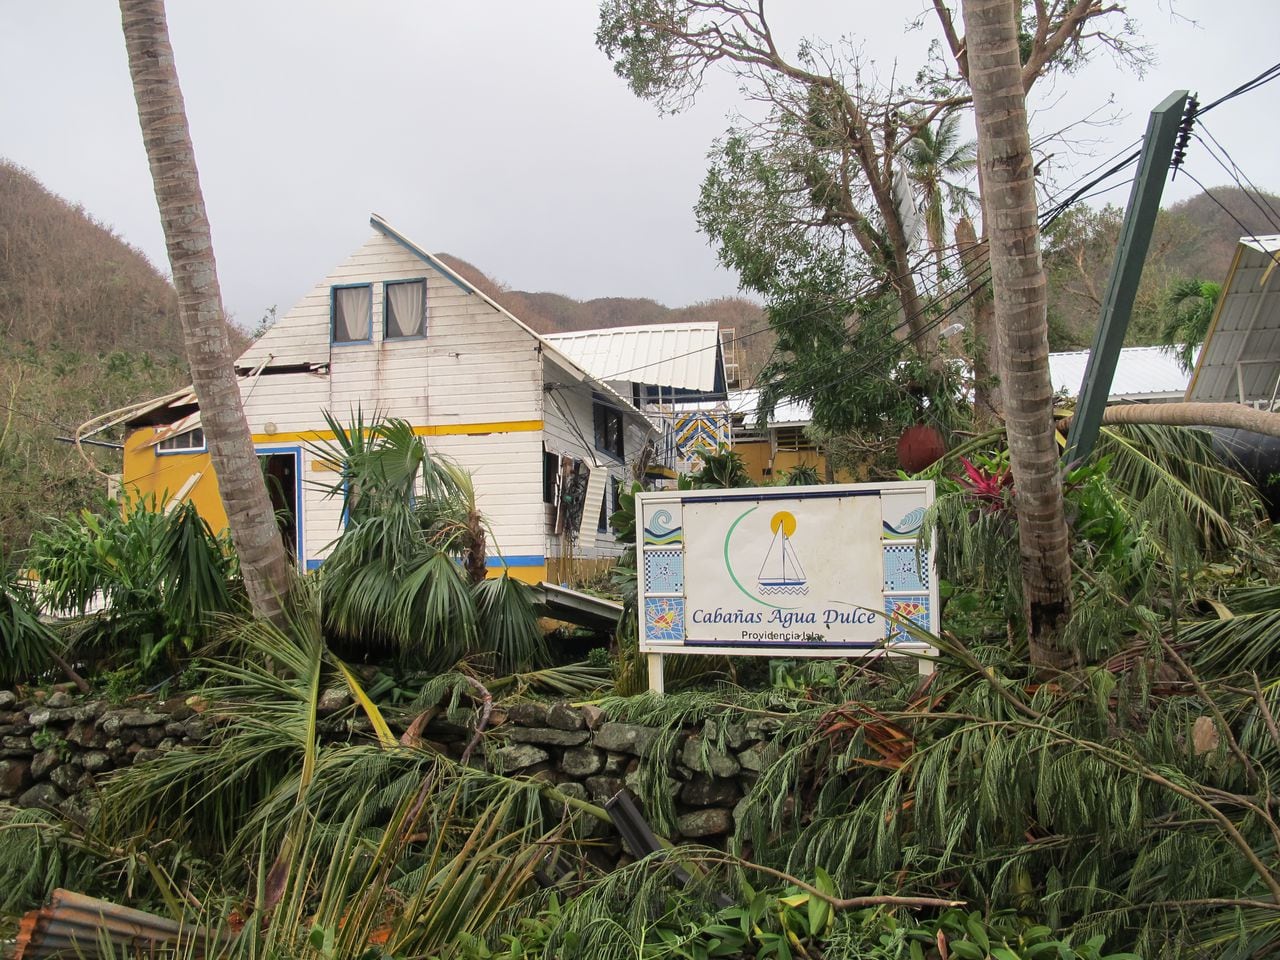 Solo un par de días antes de la llegada de Iota a territorio colombiano, 12 amigos llegaron a Providencia para hacer buceo. Lo que no se esperaban es que en medio del paseo tendrían que vivir un huracán de categoría 5 desde el corazón de la tormenta. Esta es su historia.